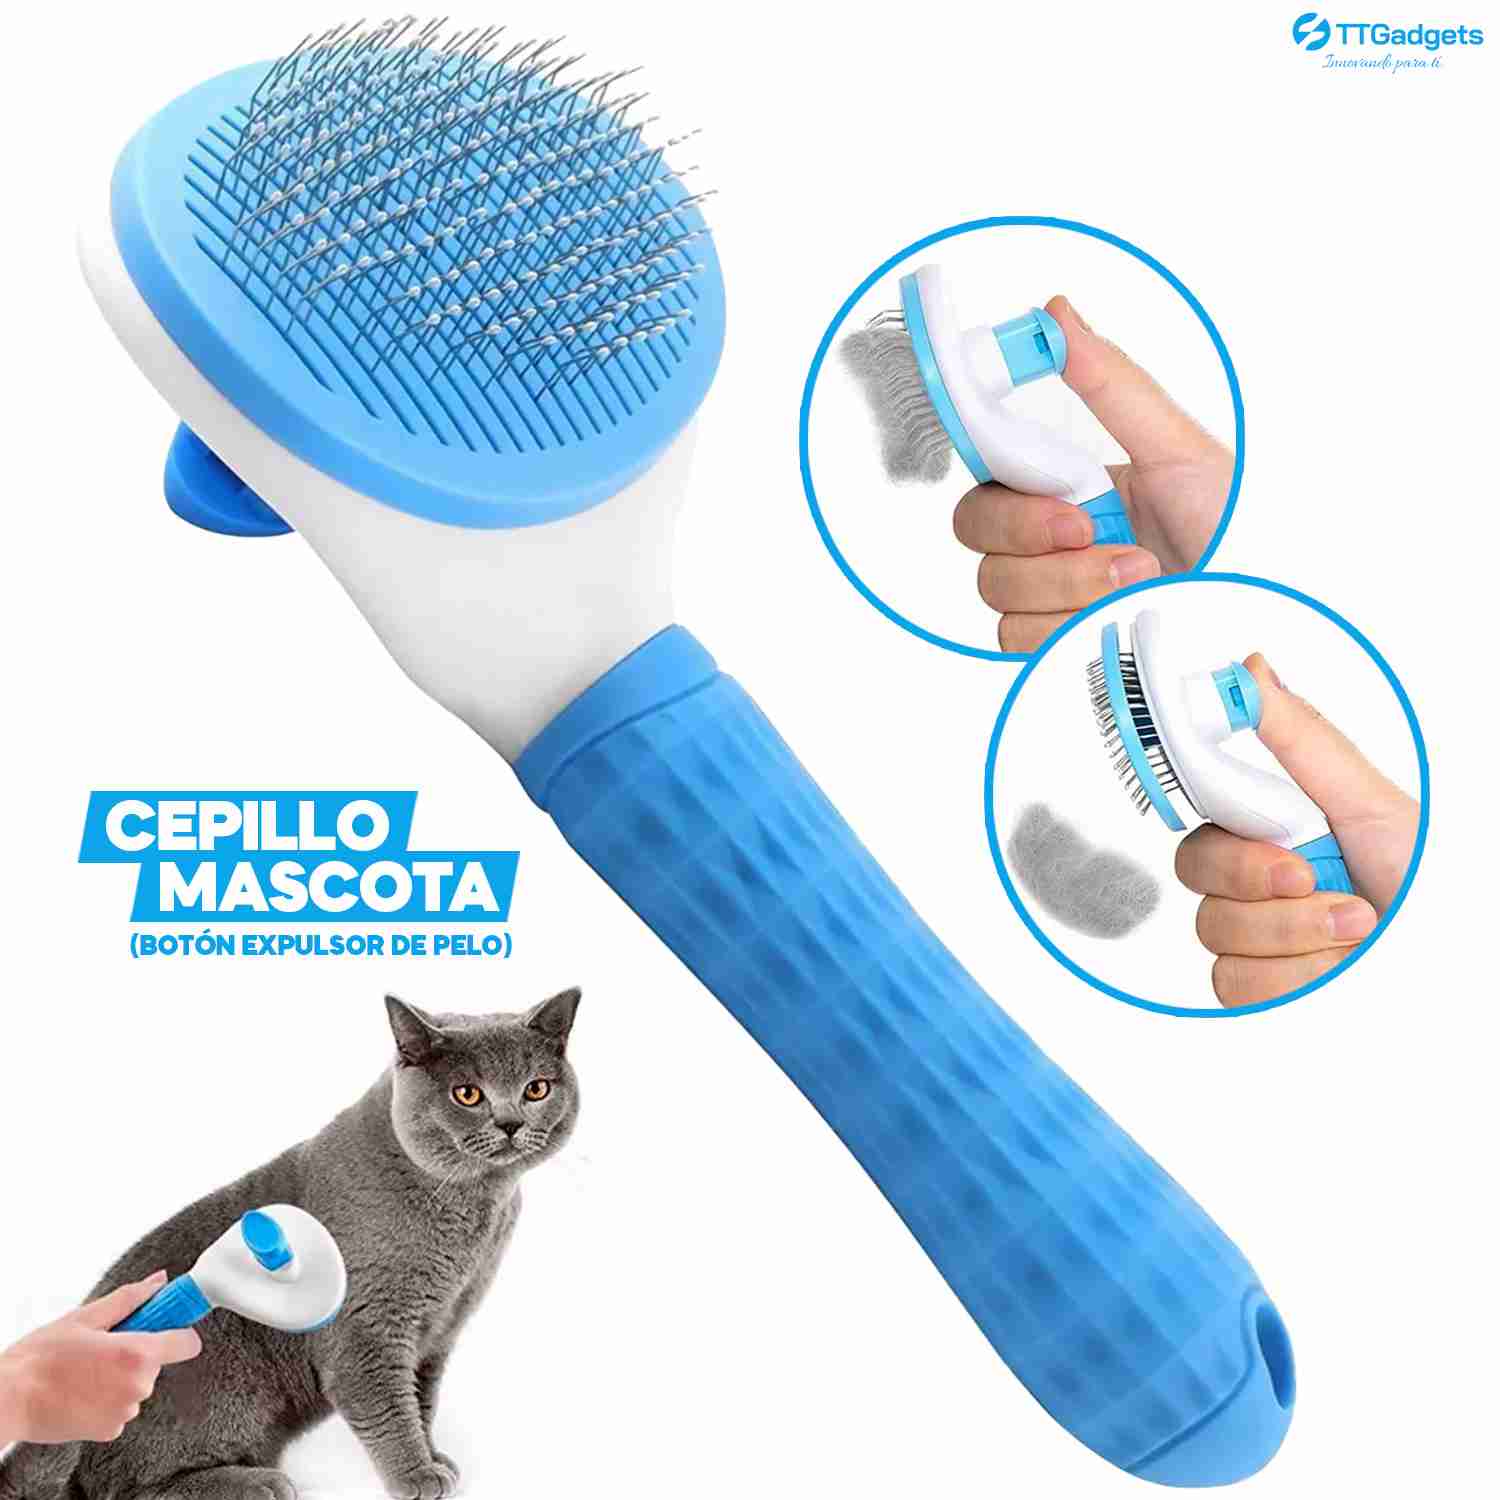 Cepillo Deslanador para Perros y gatos Mascotas, con botón de expulsión de pelo rápida y fácil, mejora la circulación de tu mascota 😸